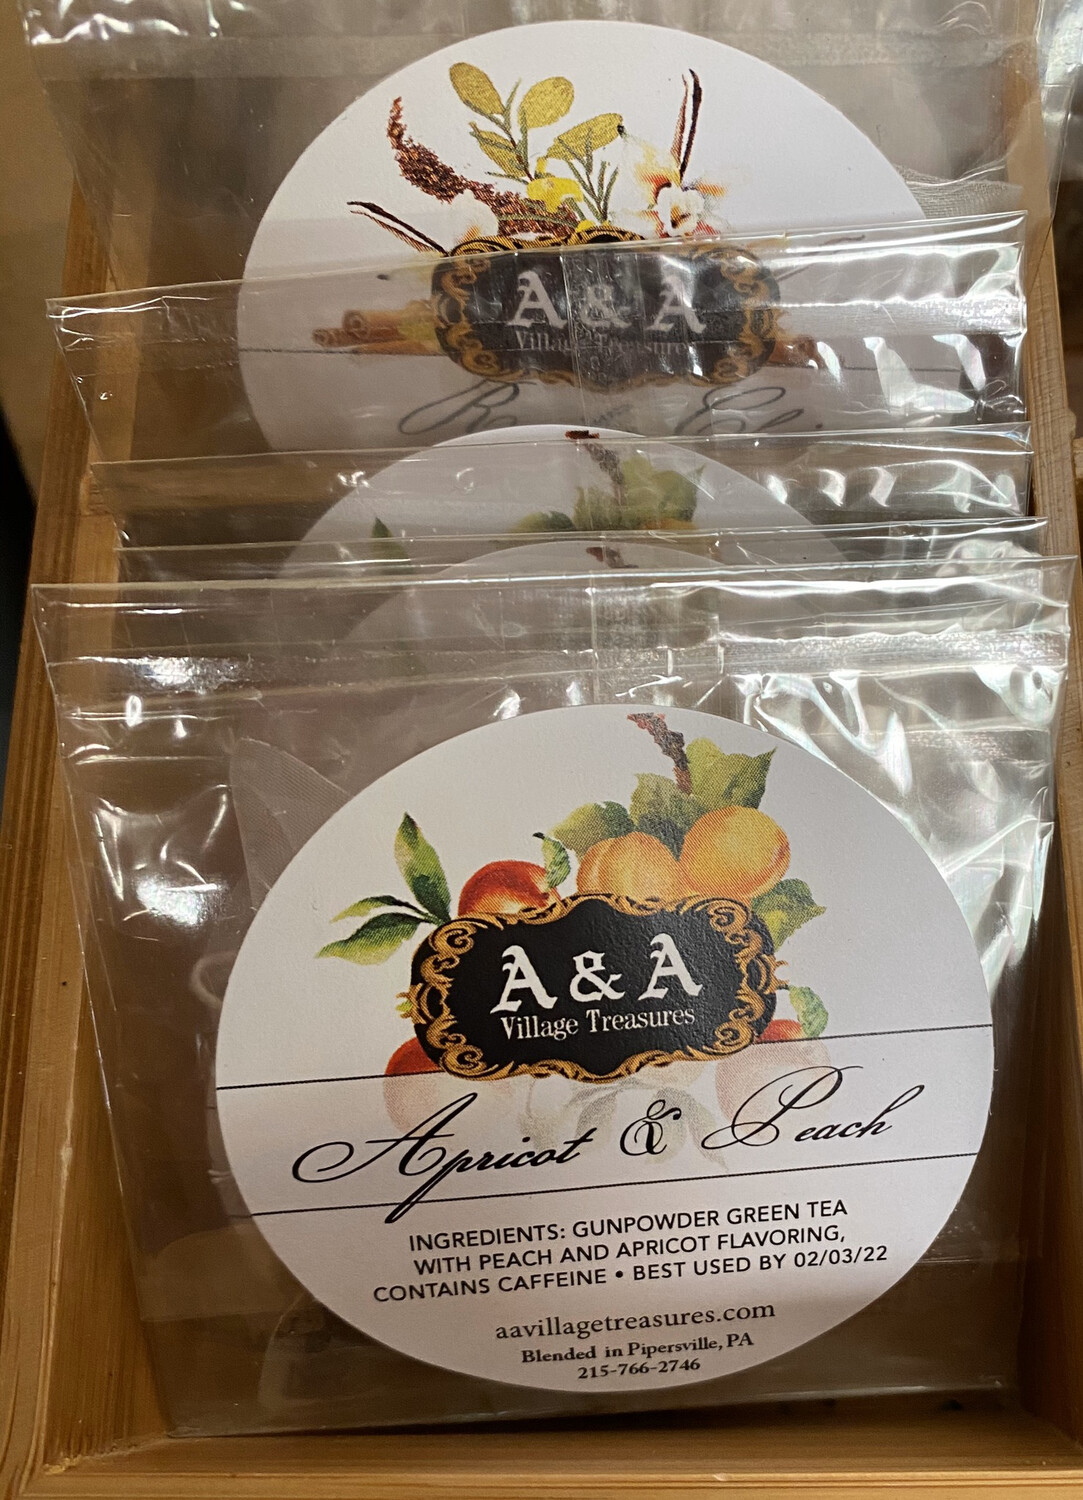 A&A Organic Tea Apricot & Peach  Organic Tea Singles